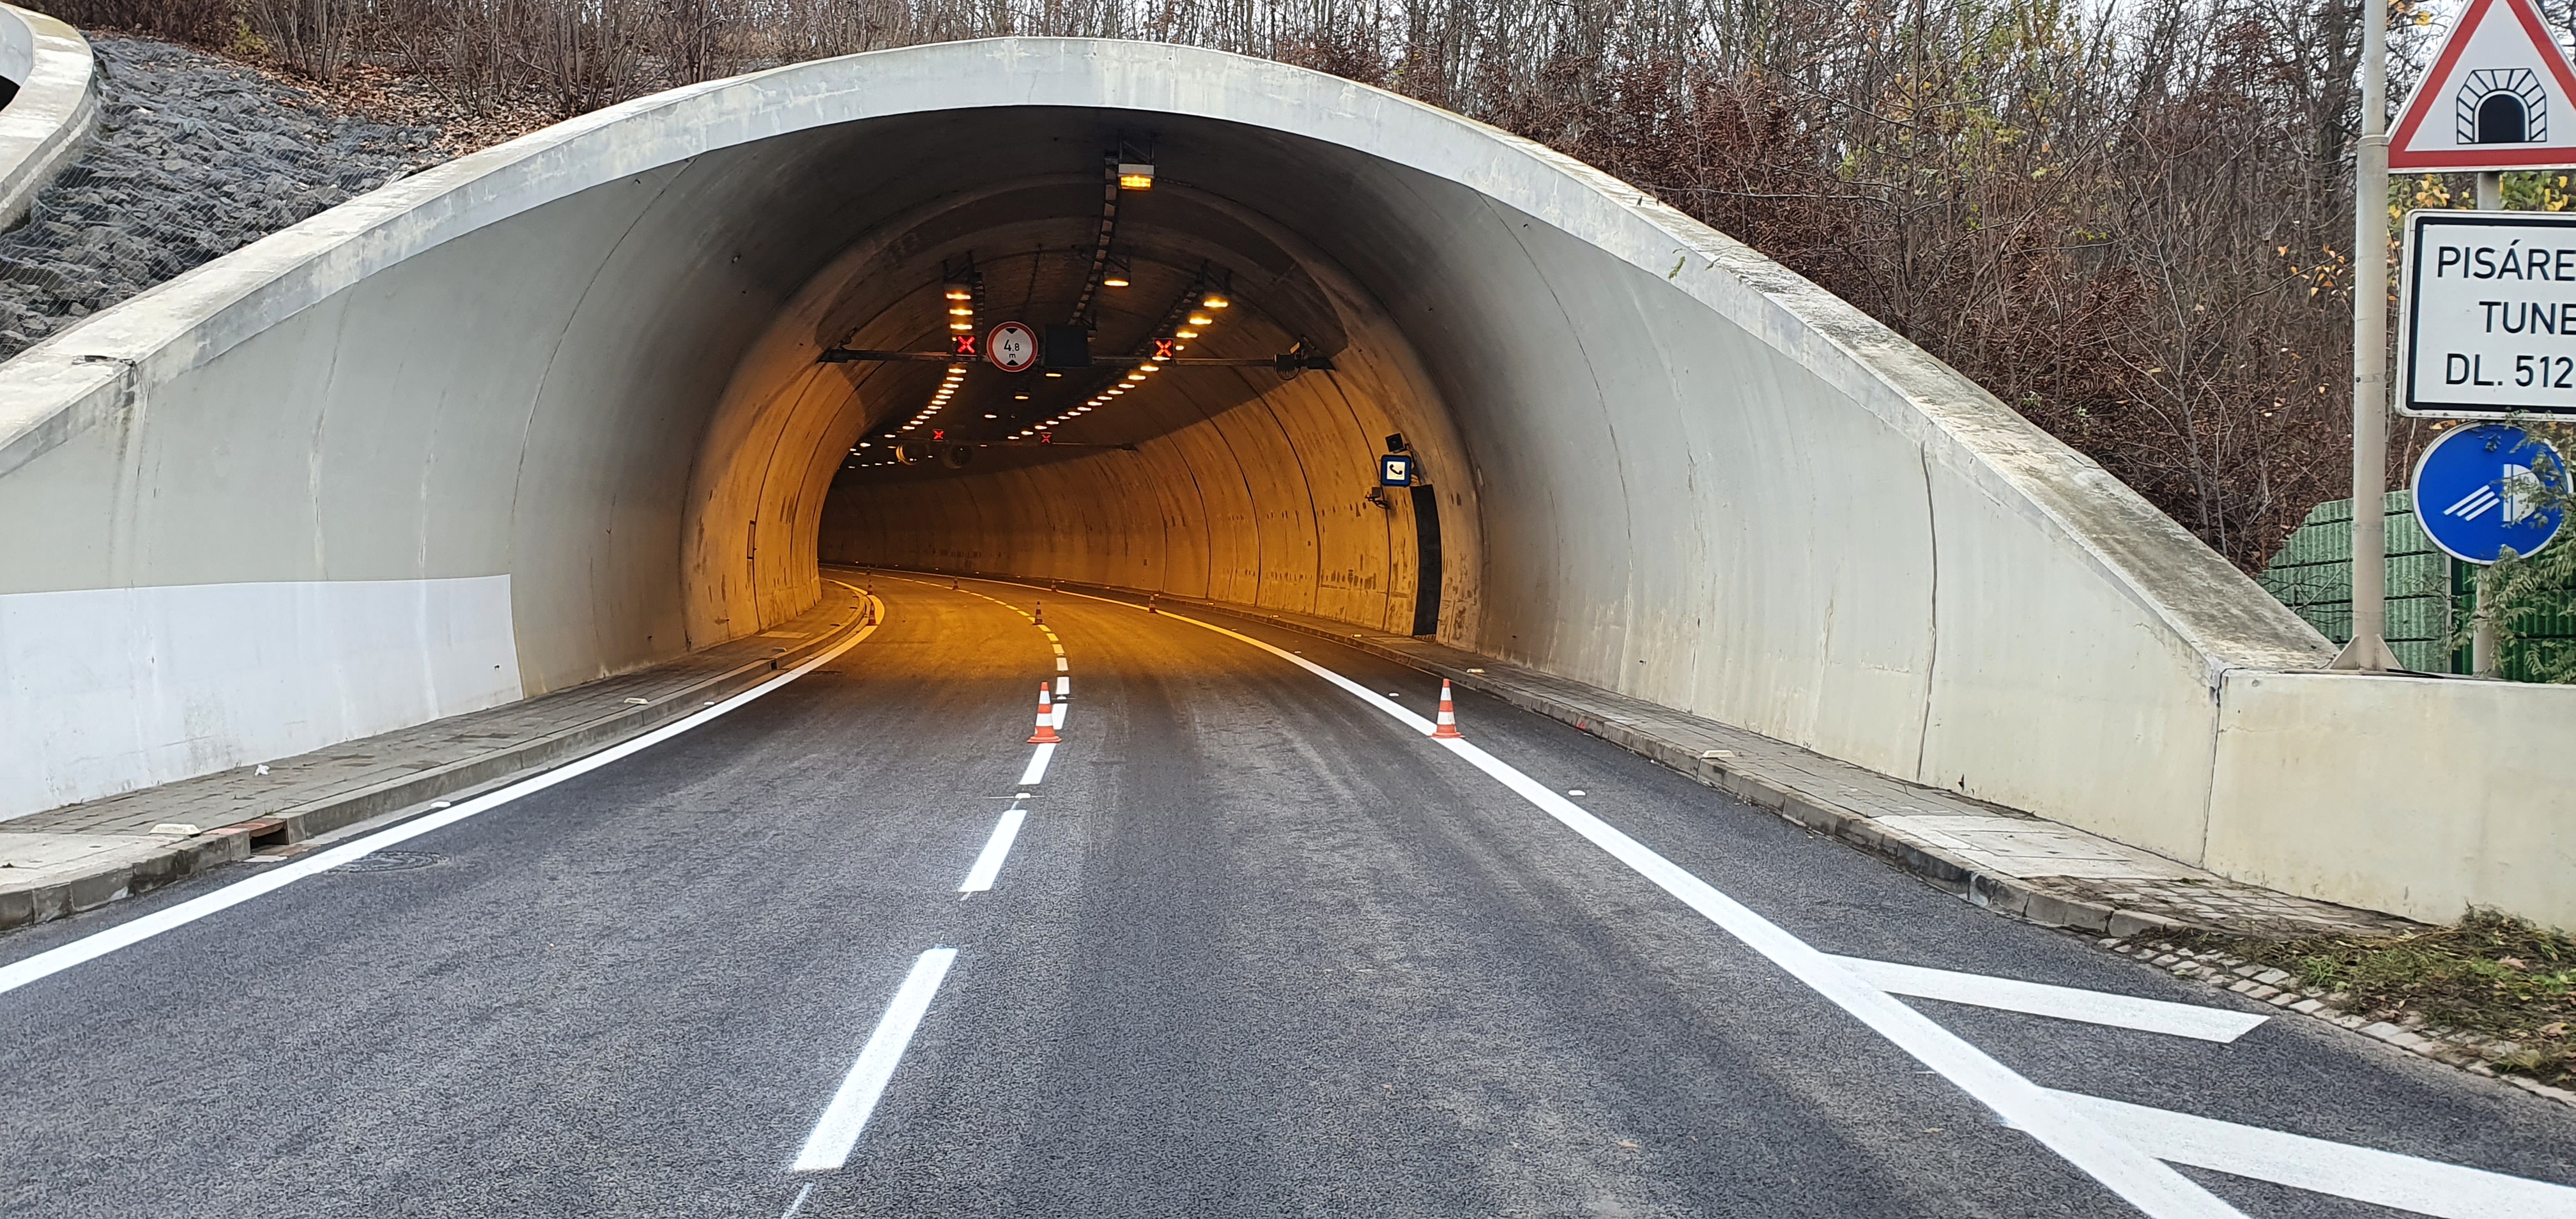 I/23 Pisárecký tunel - Út- és hídépítés